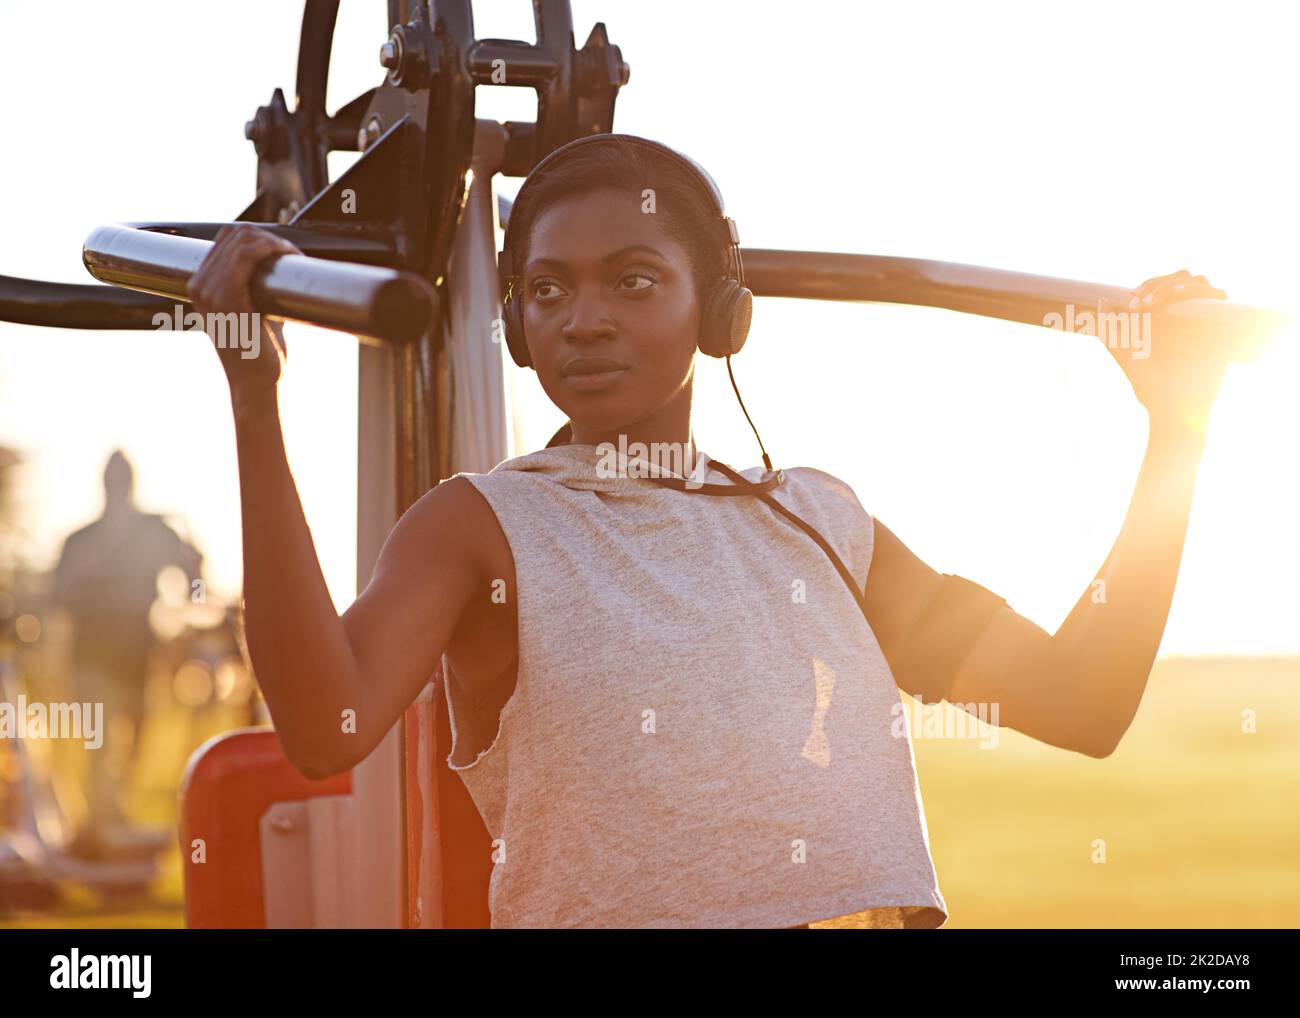 Mantenerse en forma y fuerte. Una mujer joven que usa equipo de ejercicios al aire libre en el parque. Foto de stock